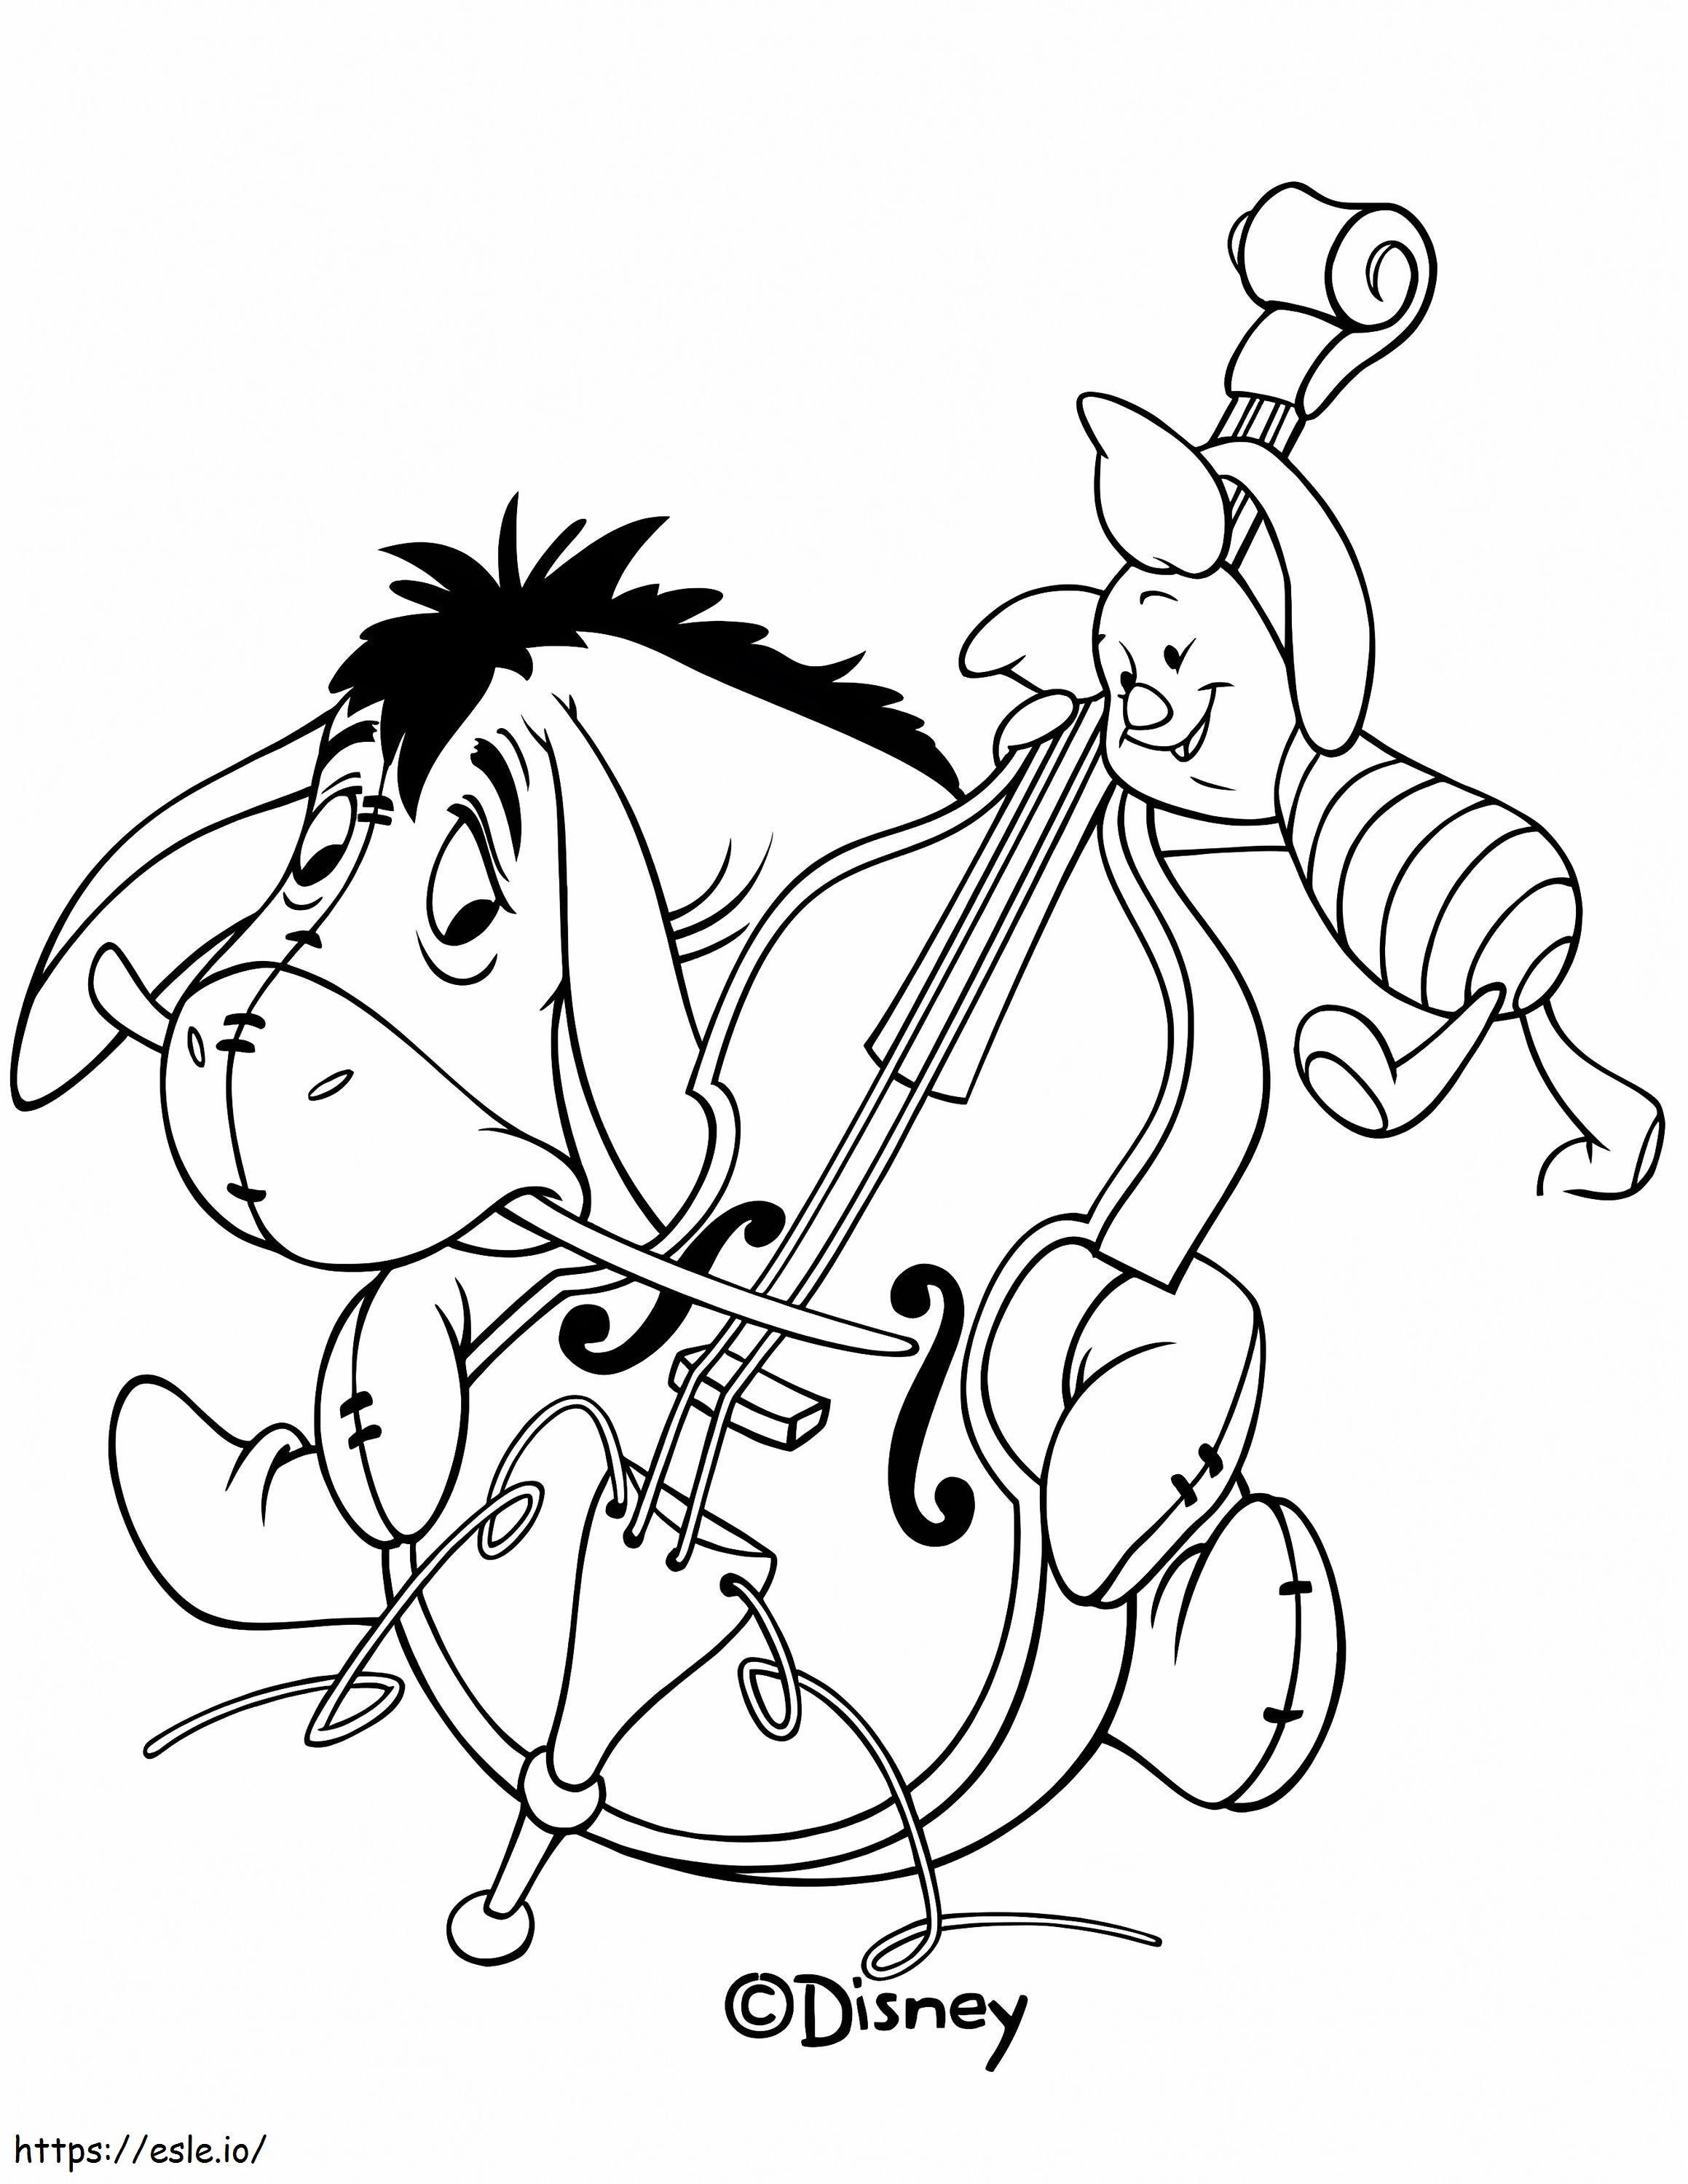 Ih-Oh e maialino che suonano il violoncello da colorare